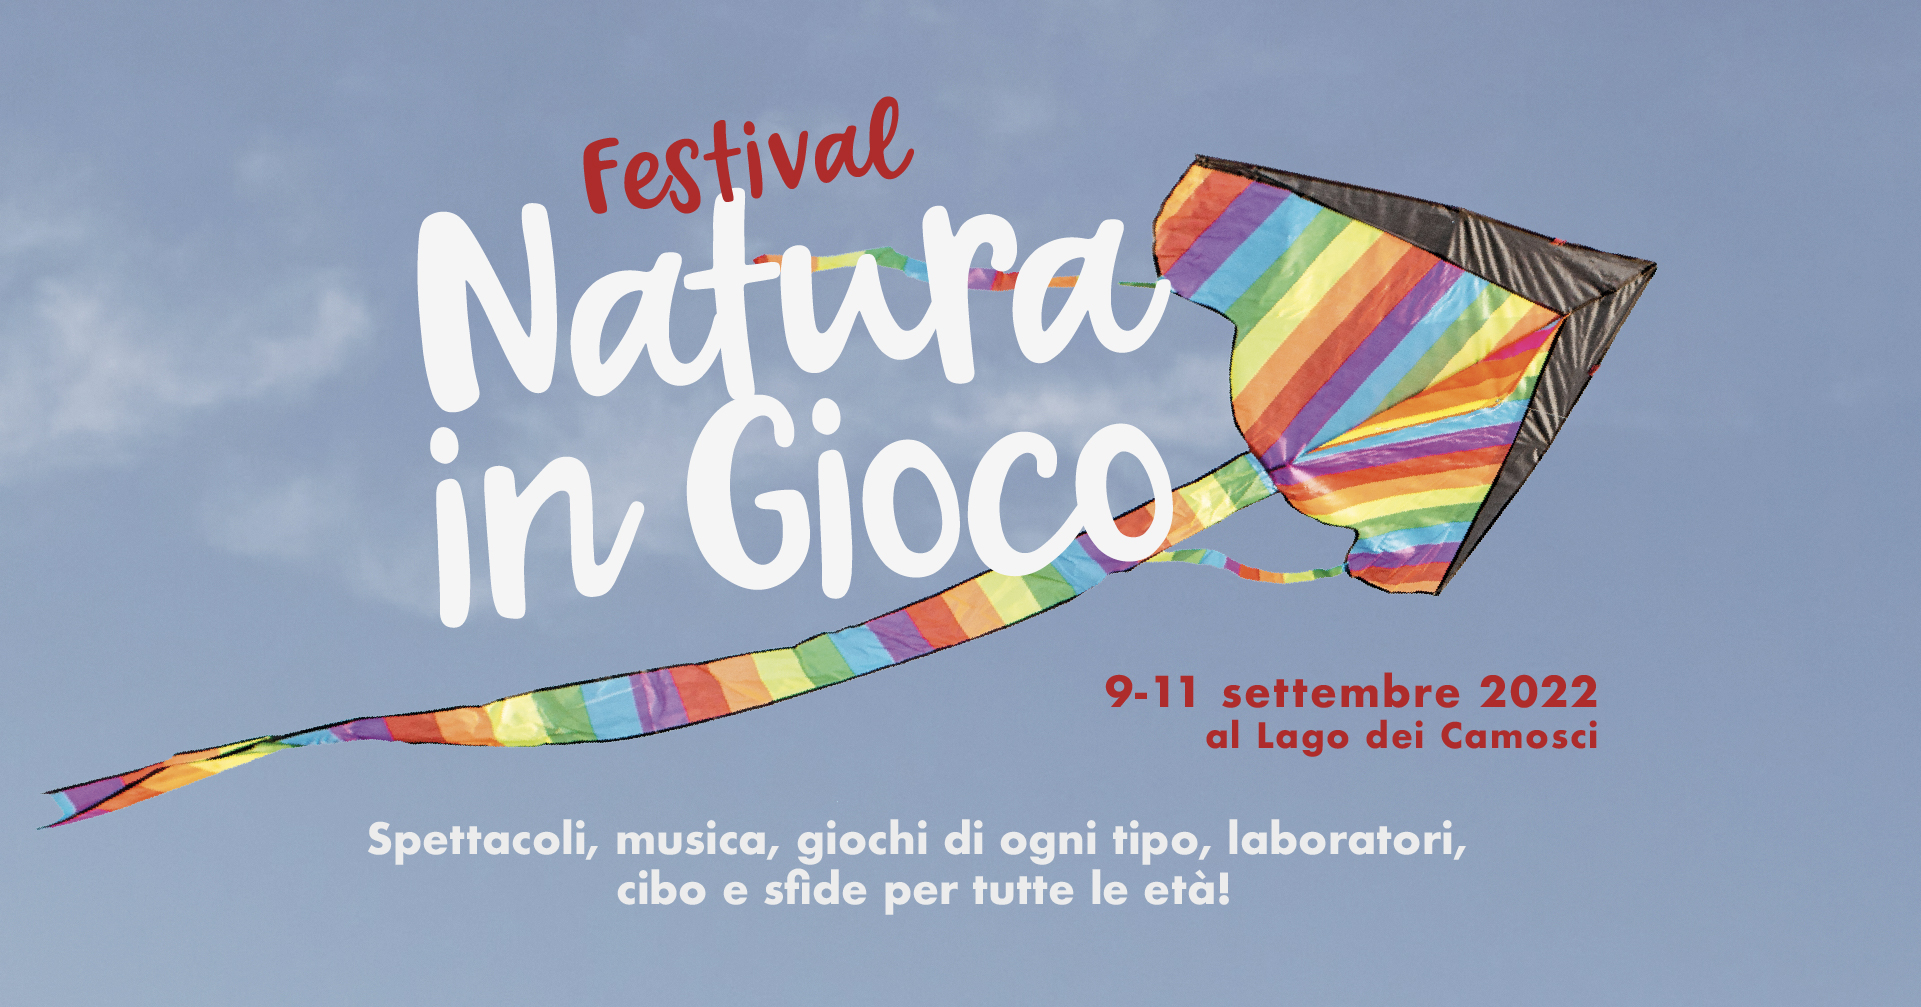 Festival NATURA IN GIOCO – Programma Completo